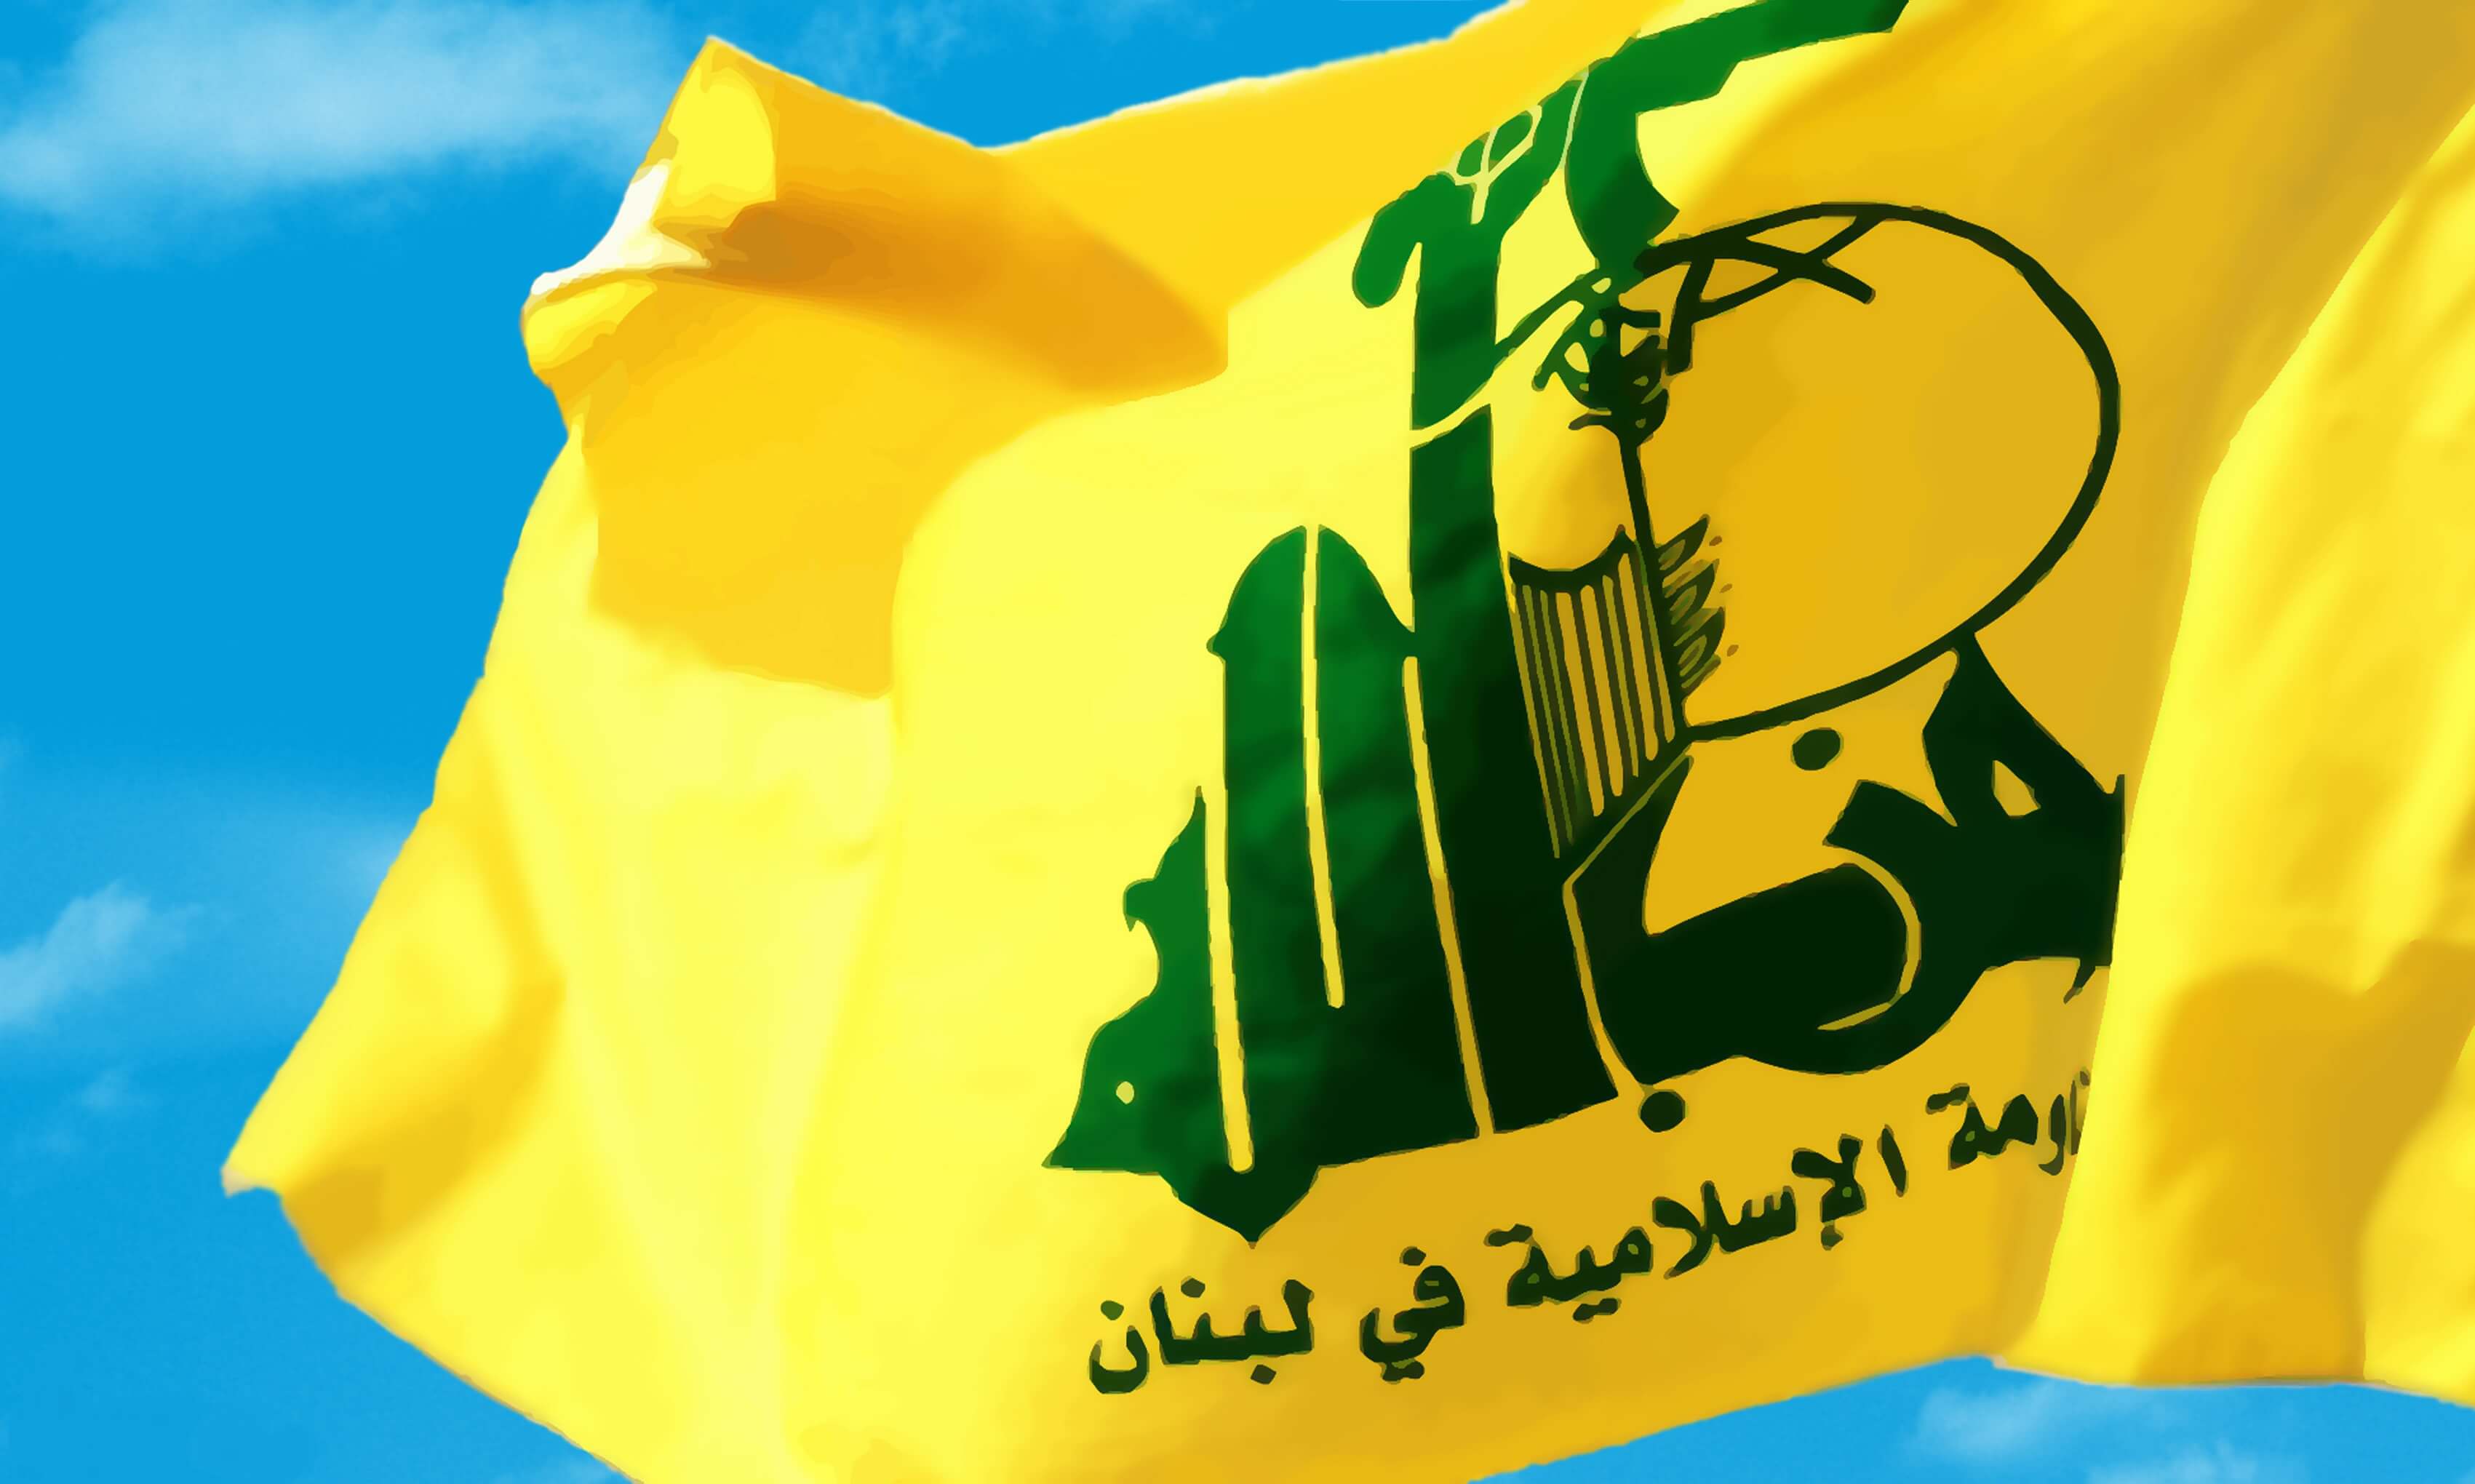 اخبار سیاسی,خبرهای سیاسی,خاورمیانه,حزب الله لبنان